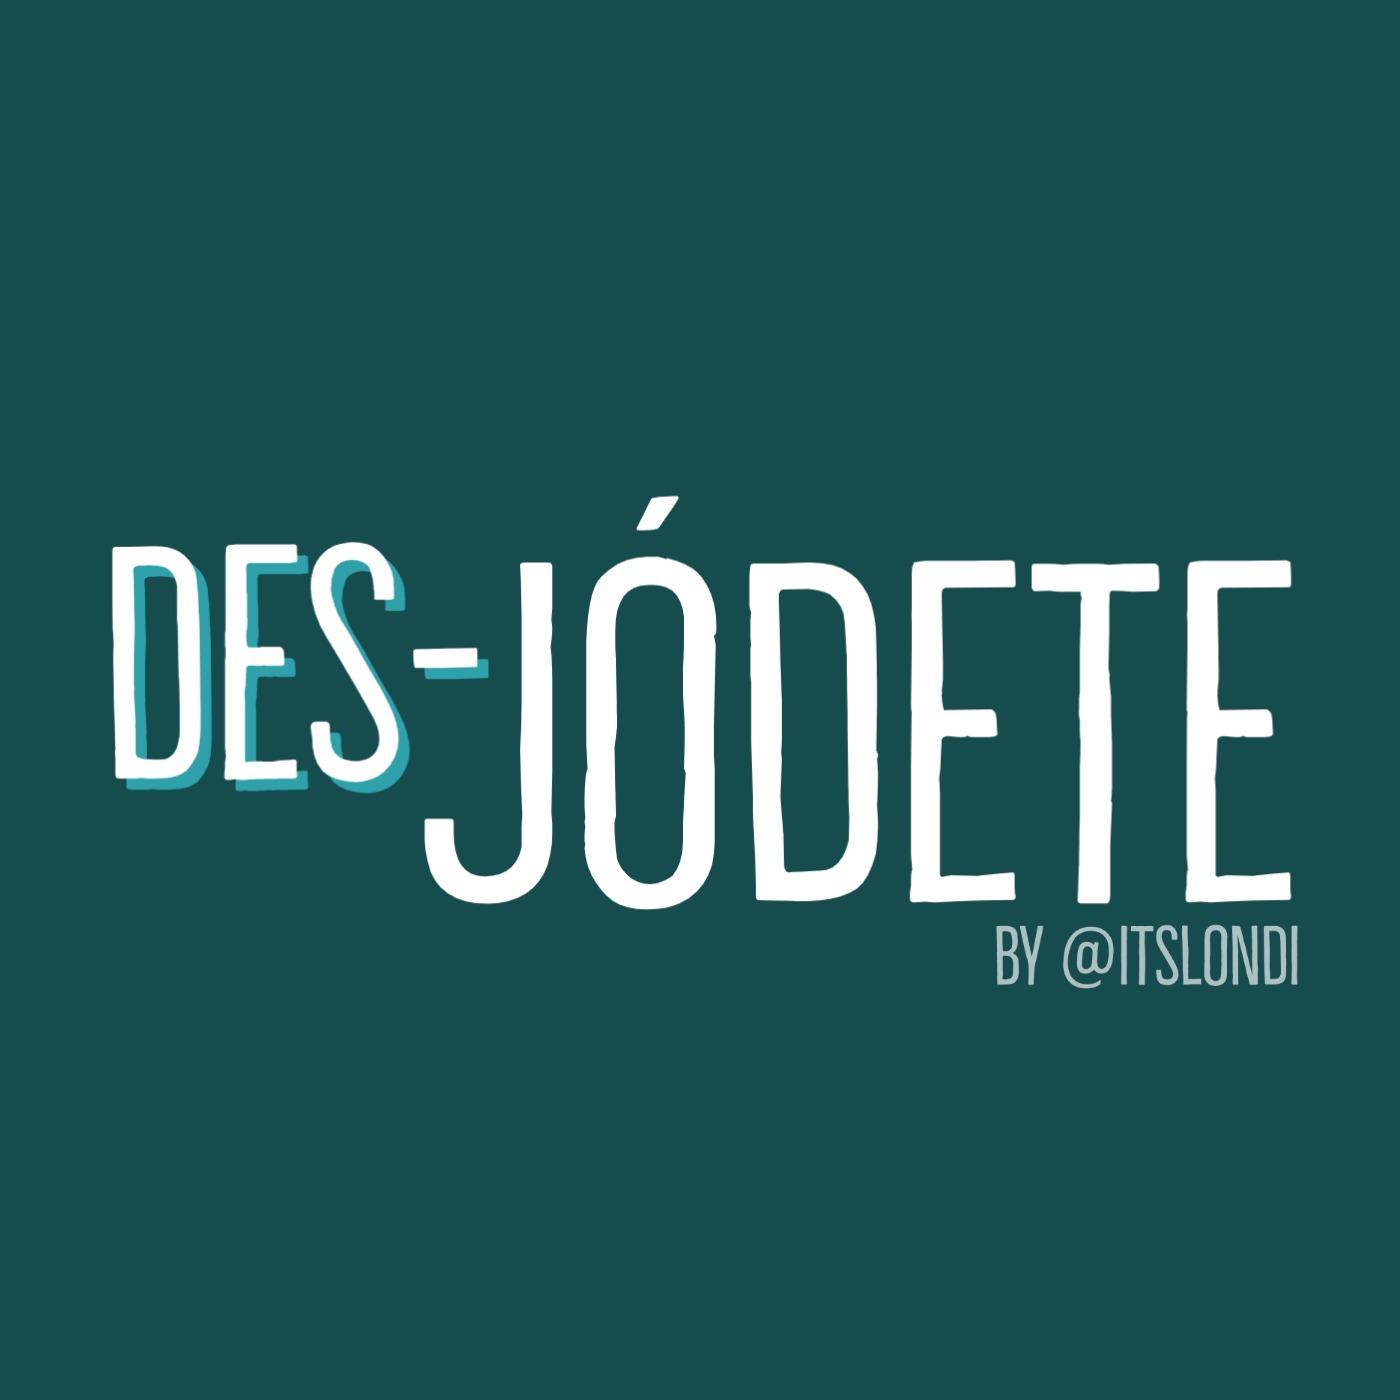 DES-JODETE